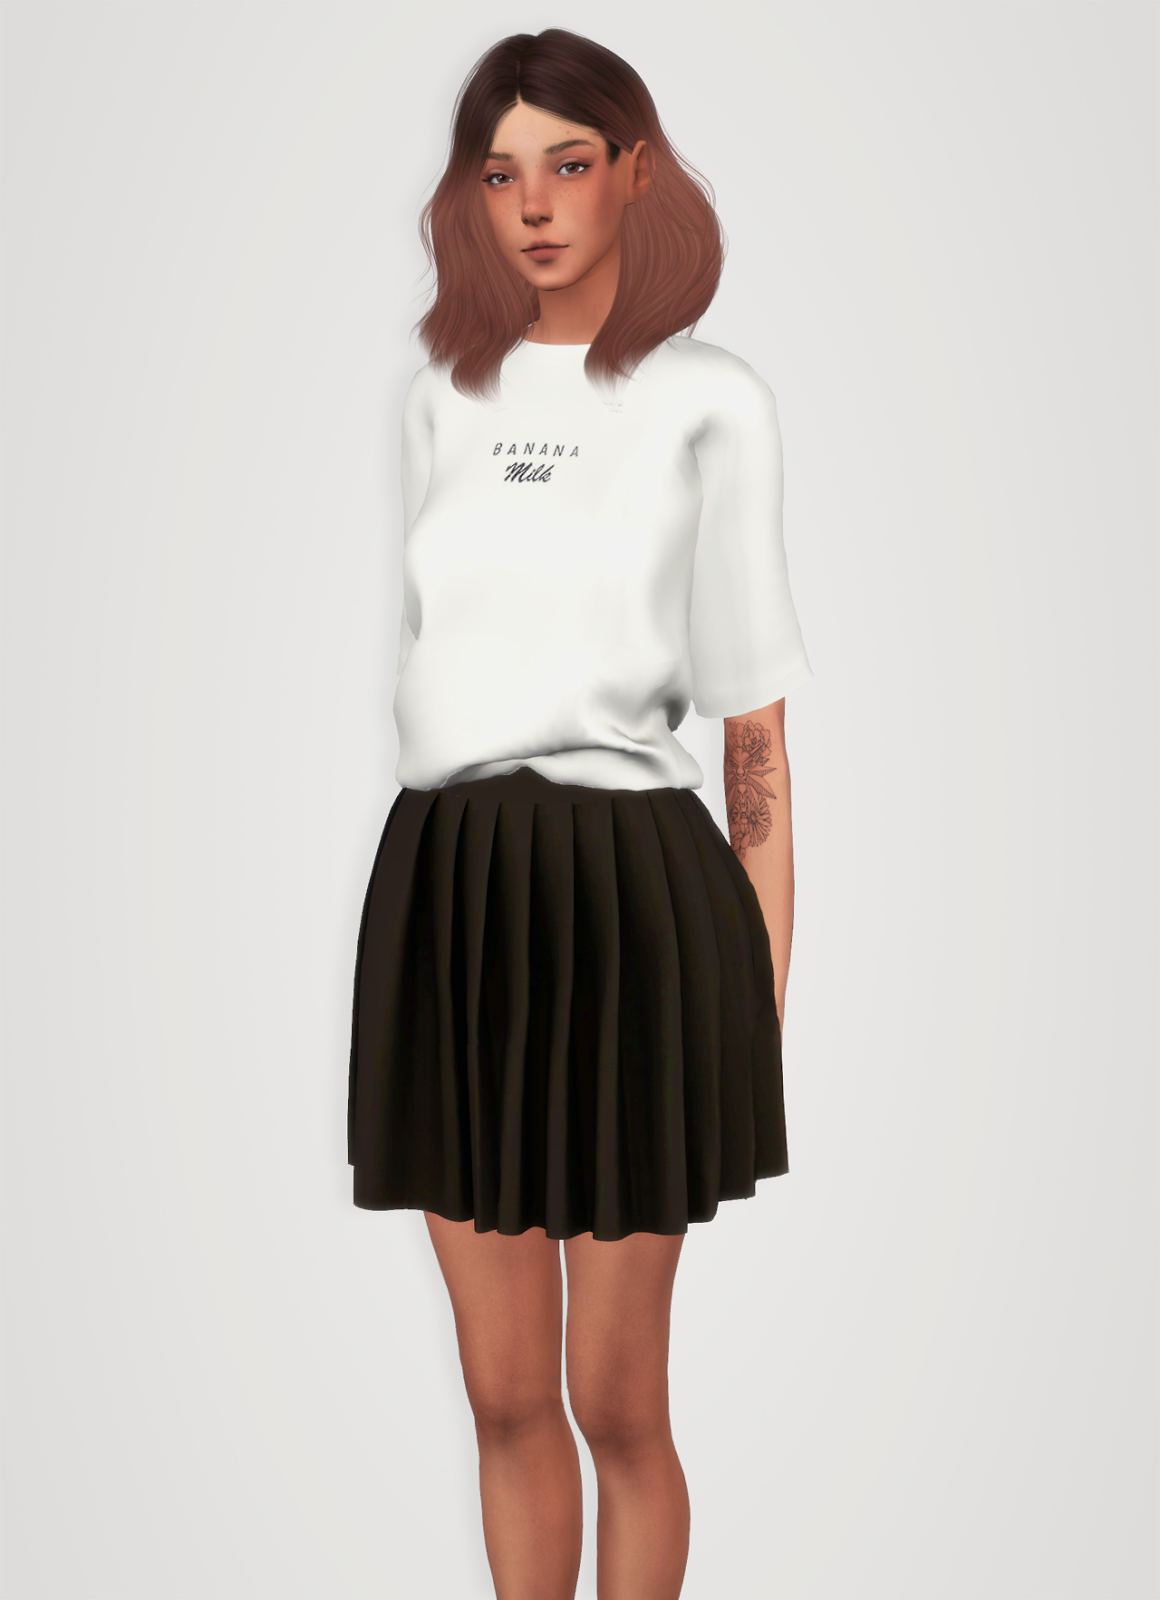 Sims 4 female clothing cc - ruleszoom